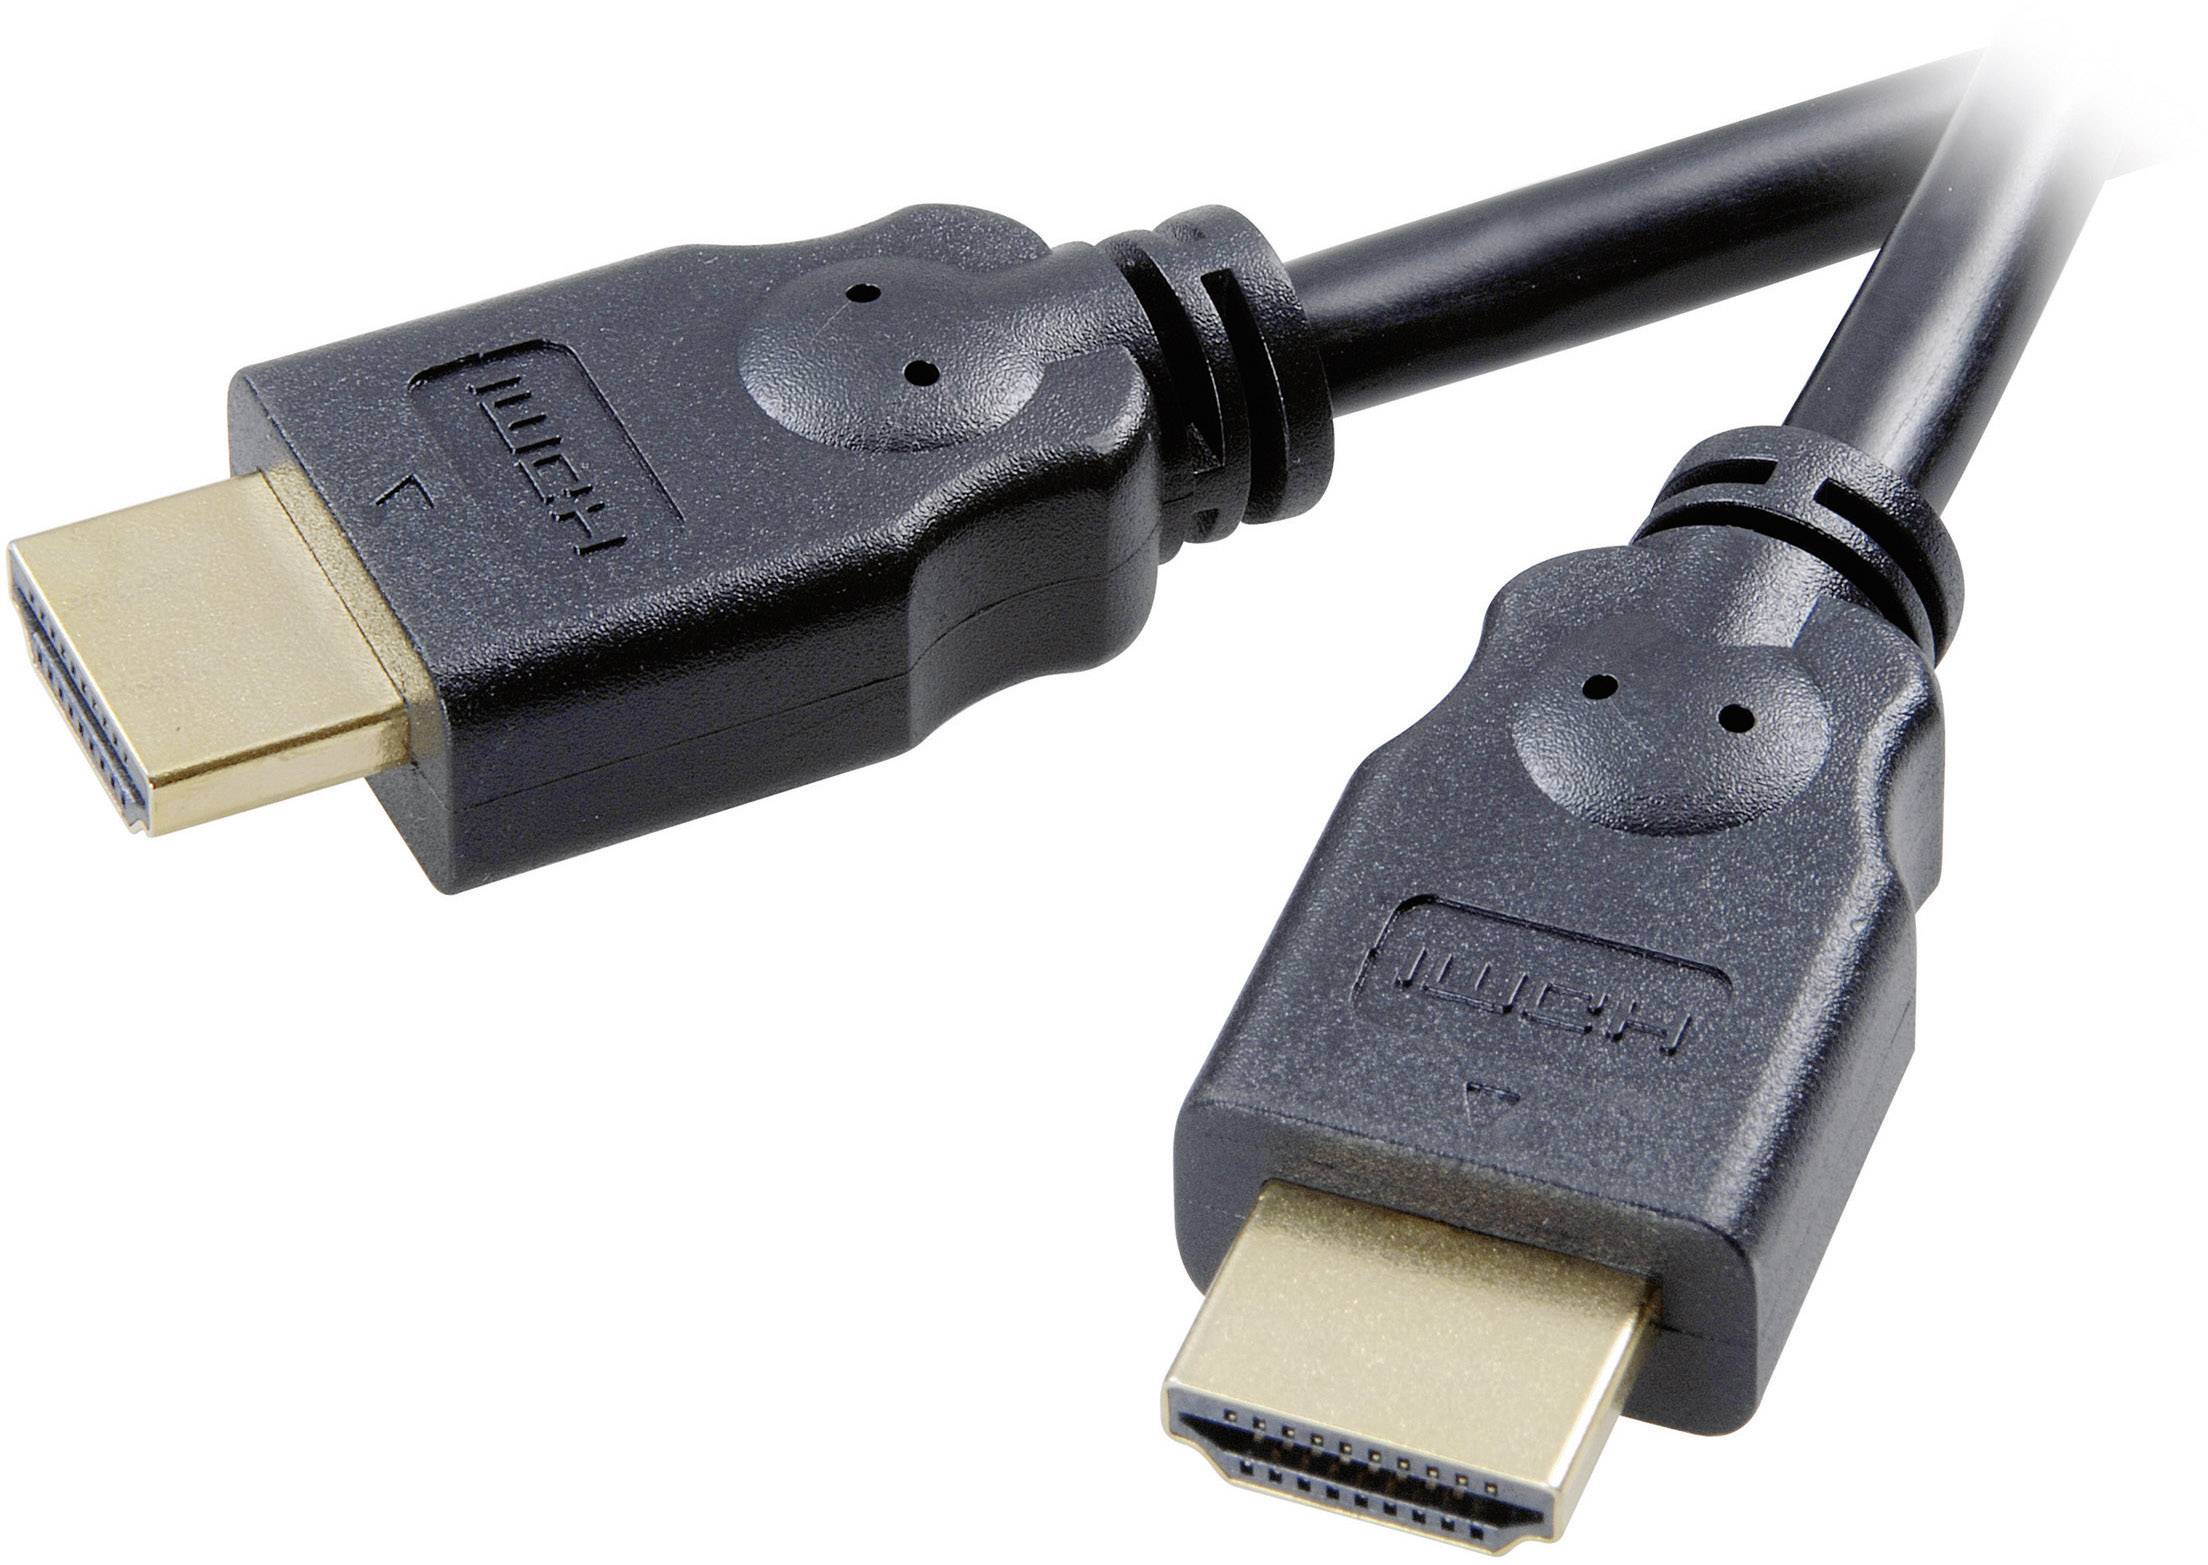 SPEAKA PROFESSIONAL HDMI Anschlusskabel [1x HDMI-Stecker - 1x HDMI-Stecker] 1.5 m Schwarz